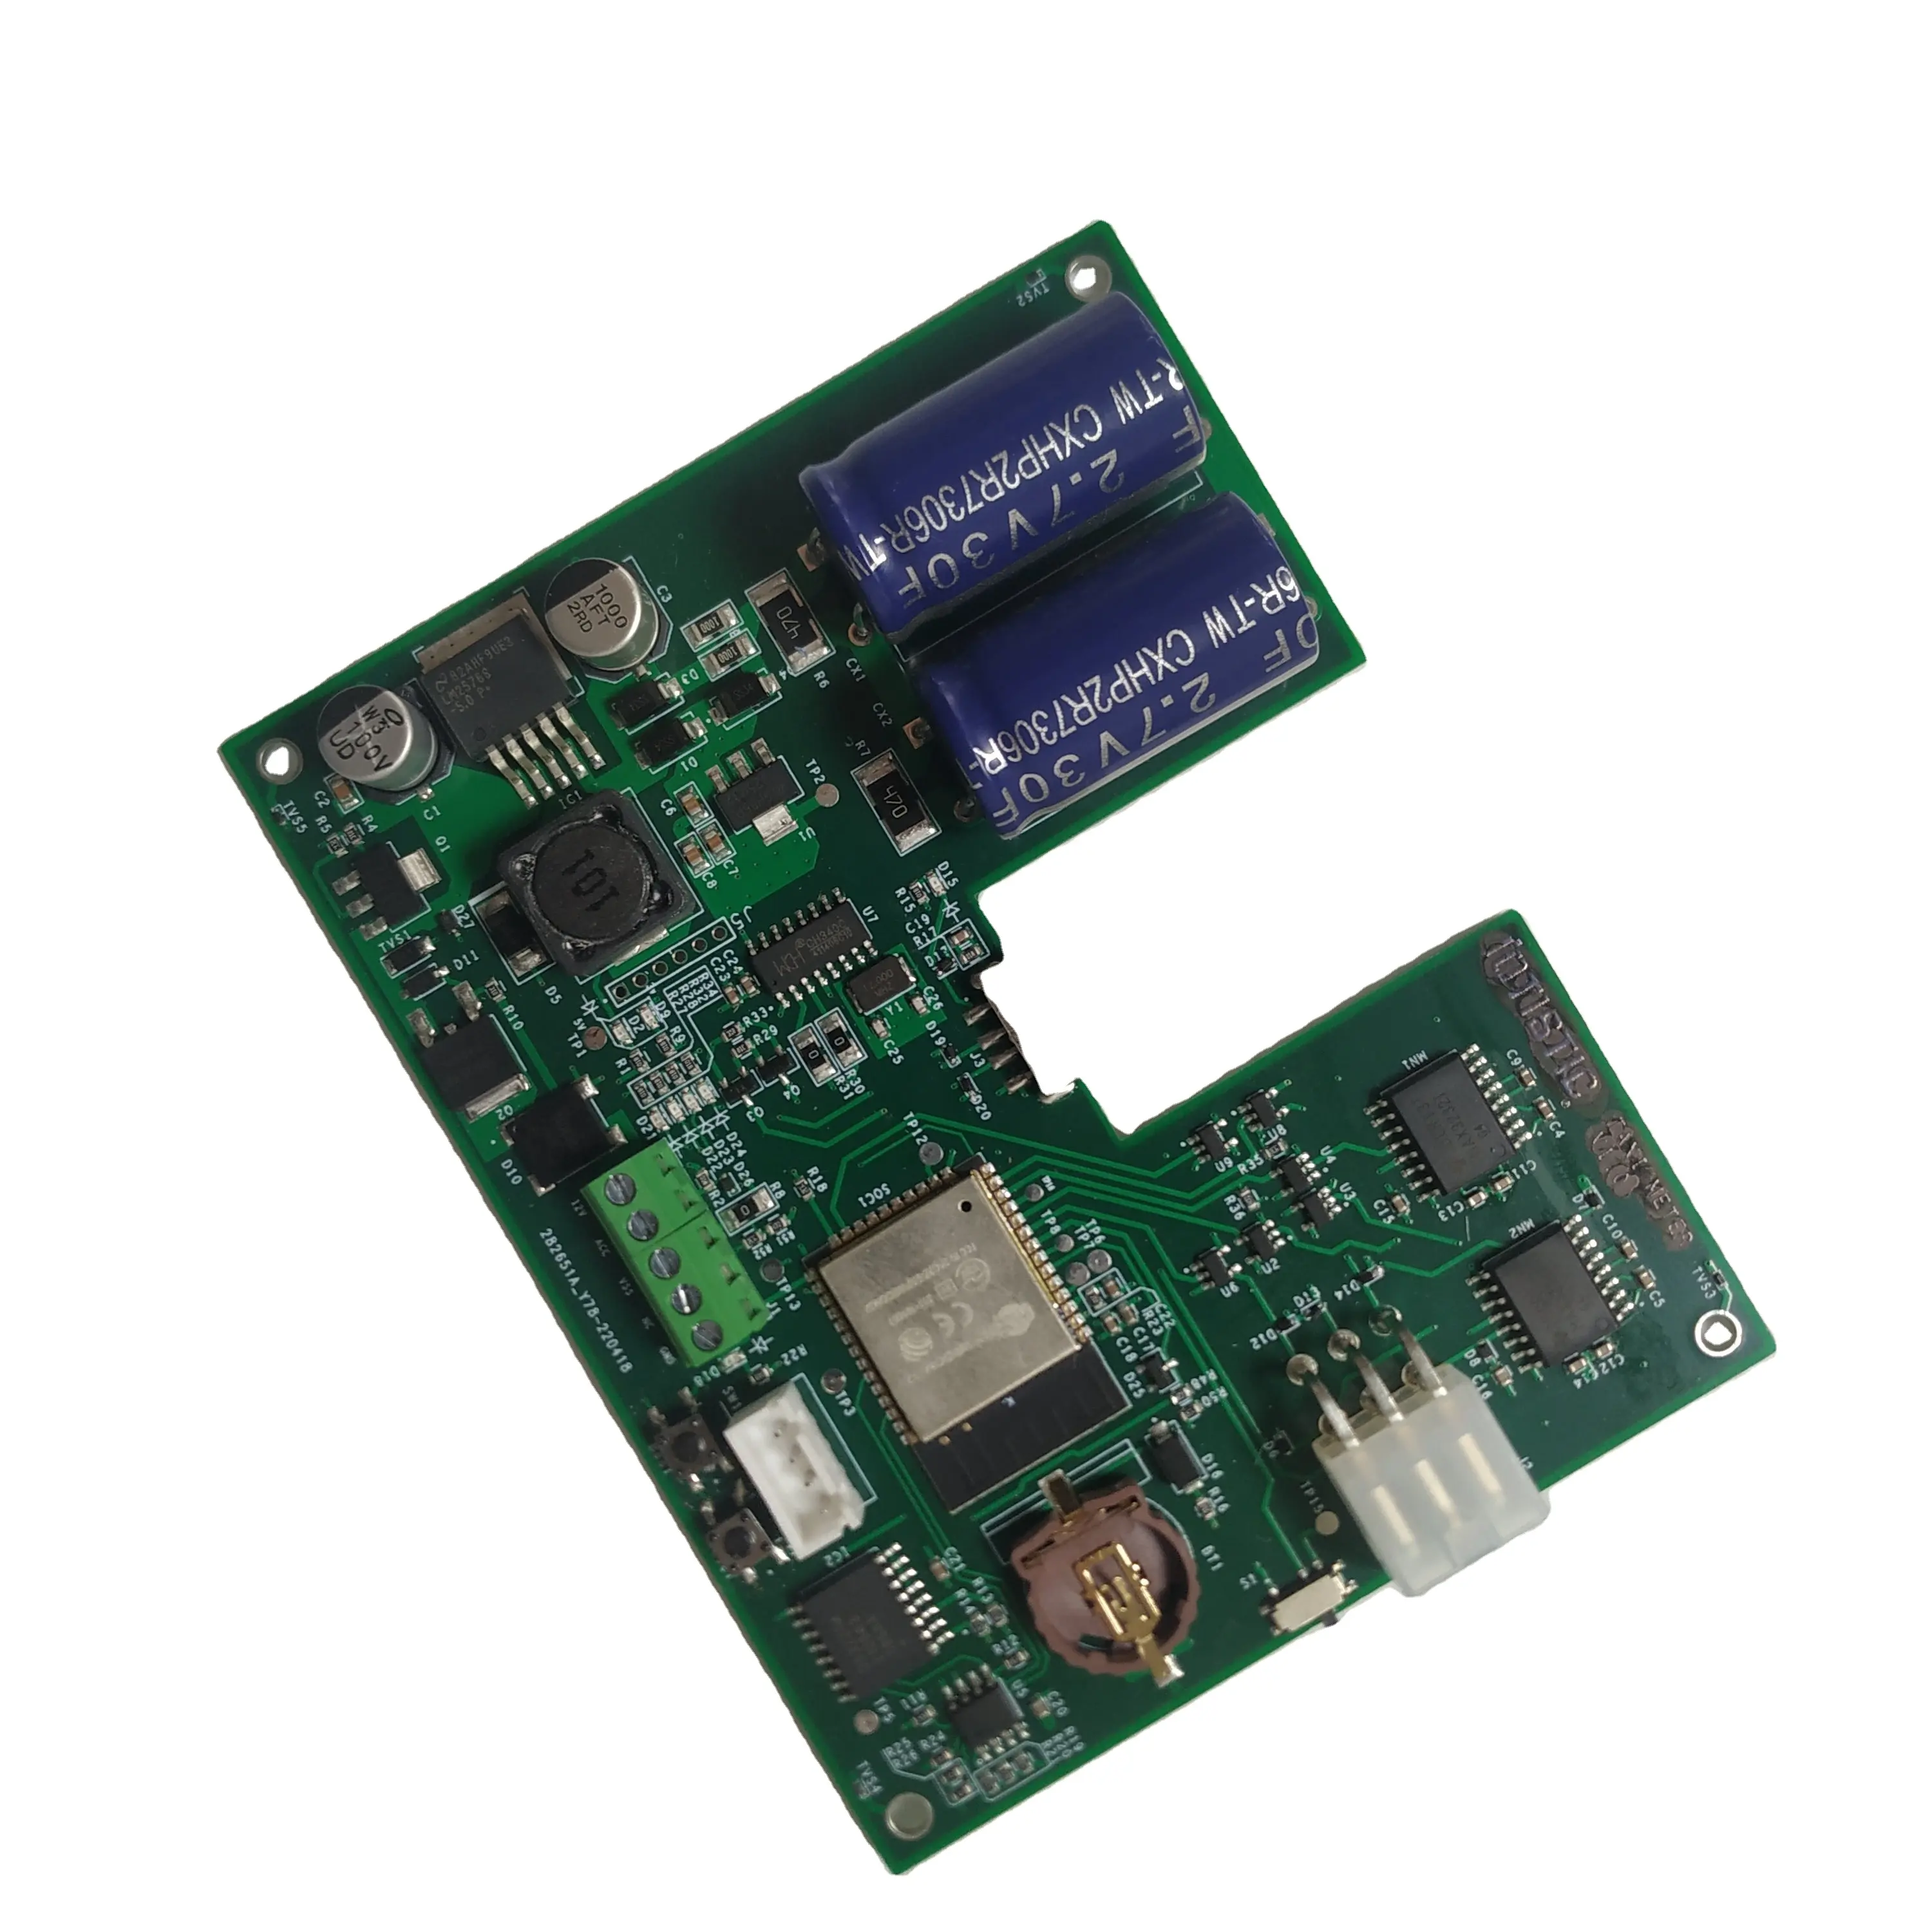 Placa de circuito impreso Pcb y Pcba, ensamblaje para dispositivo Iot, fabricación en China